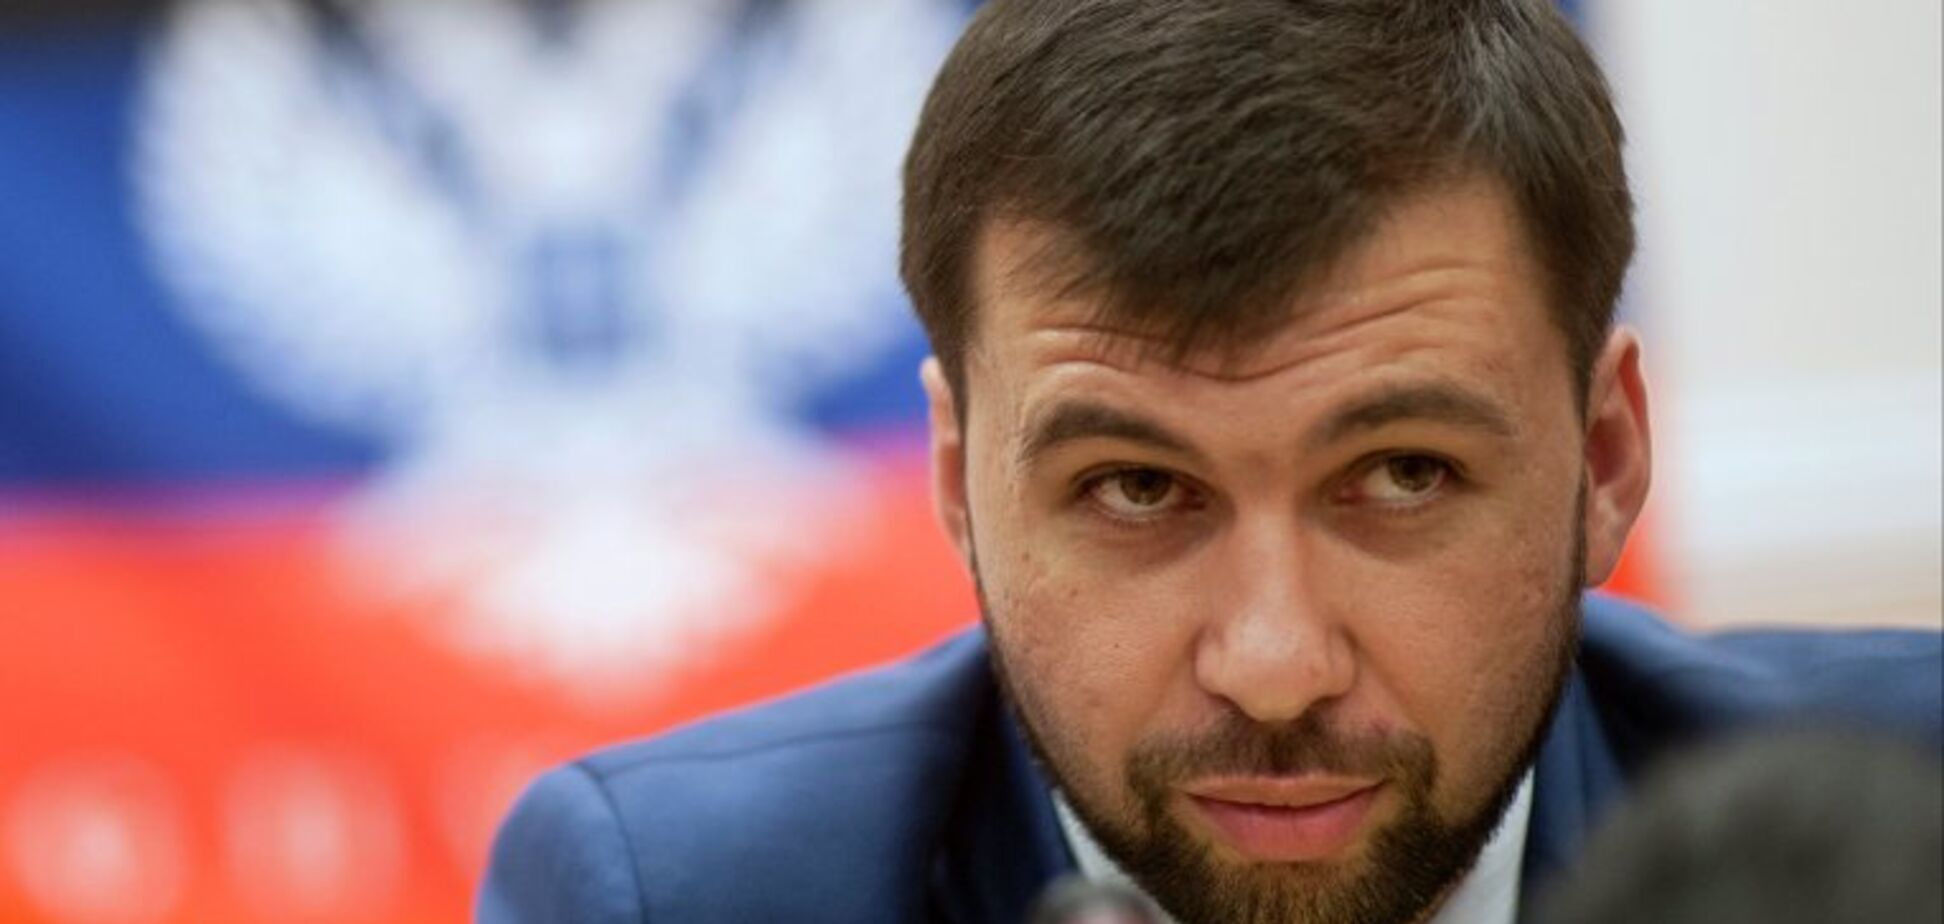 Еле пиджак застегнул: в сети высмеяли располневшего главаря ''ДНР''